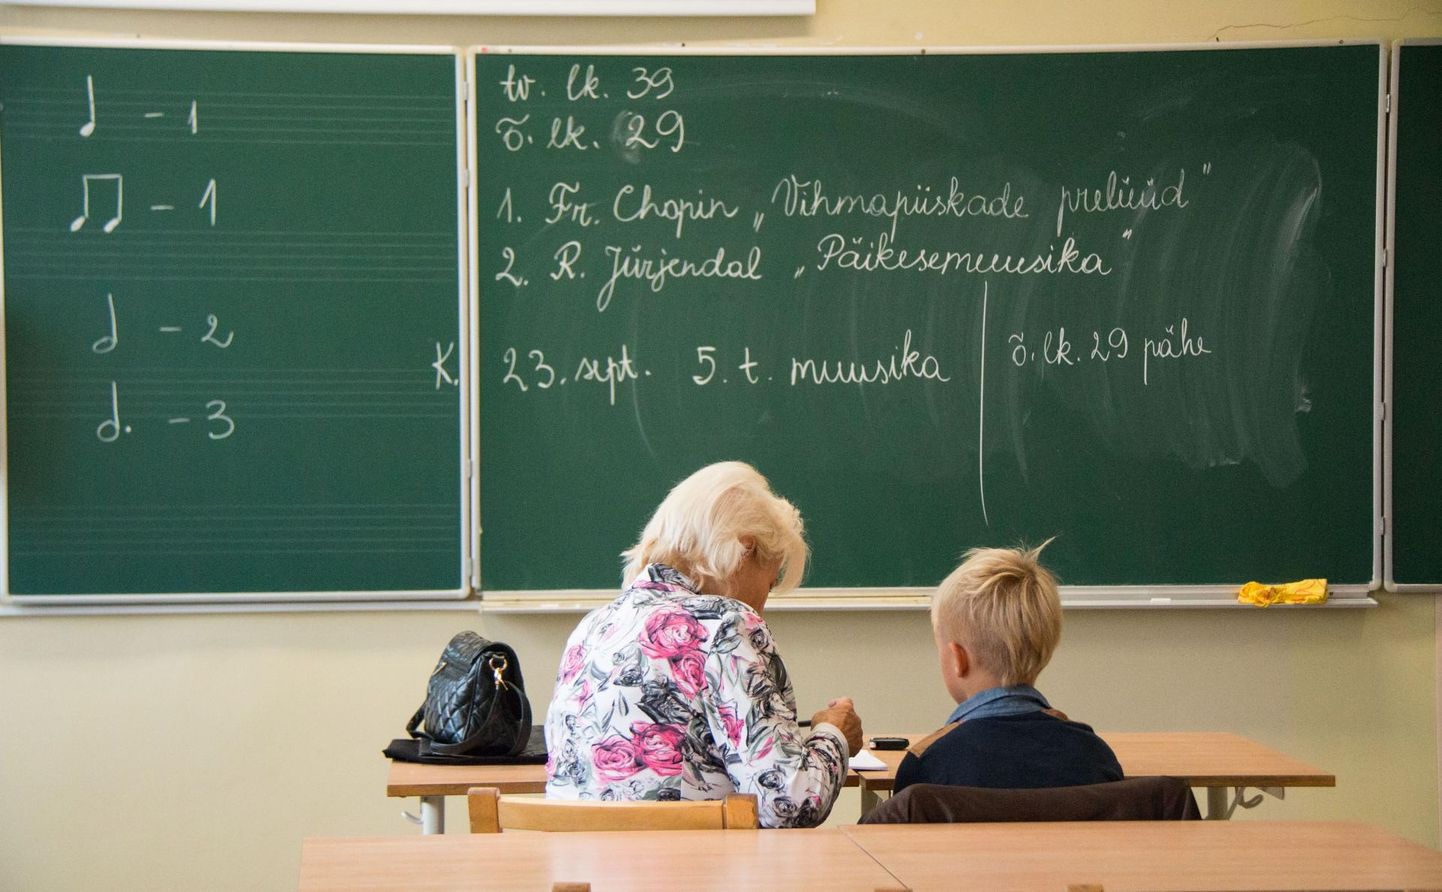 Õpetajate alampalk on 2020. aastal 1315 eurot.